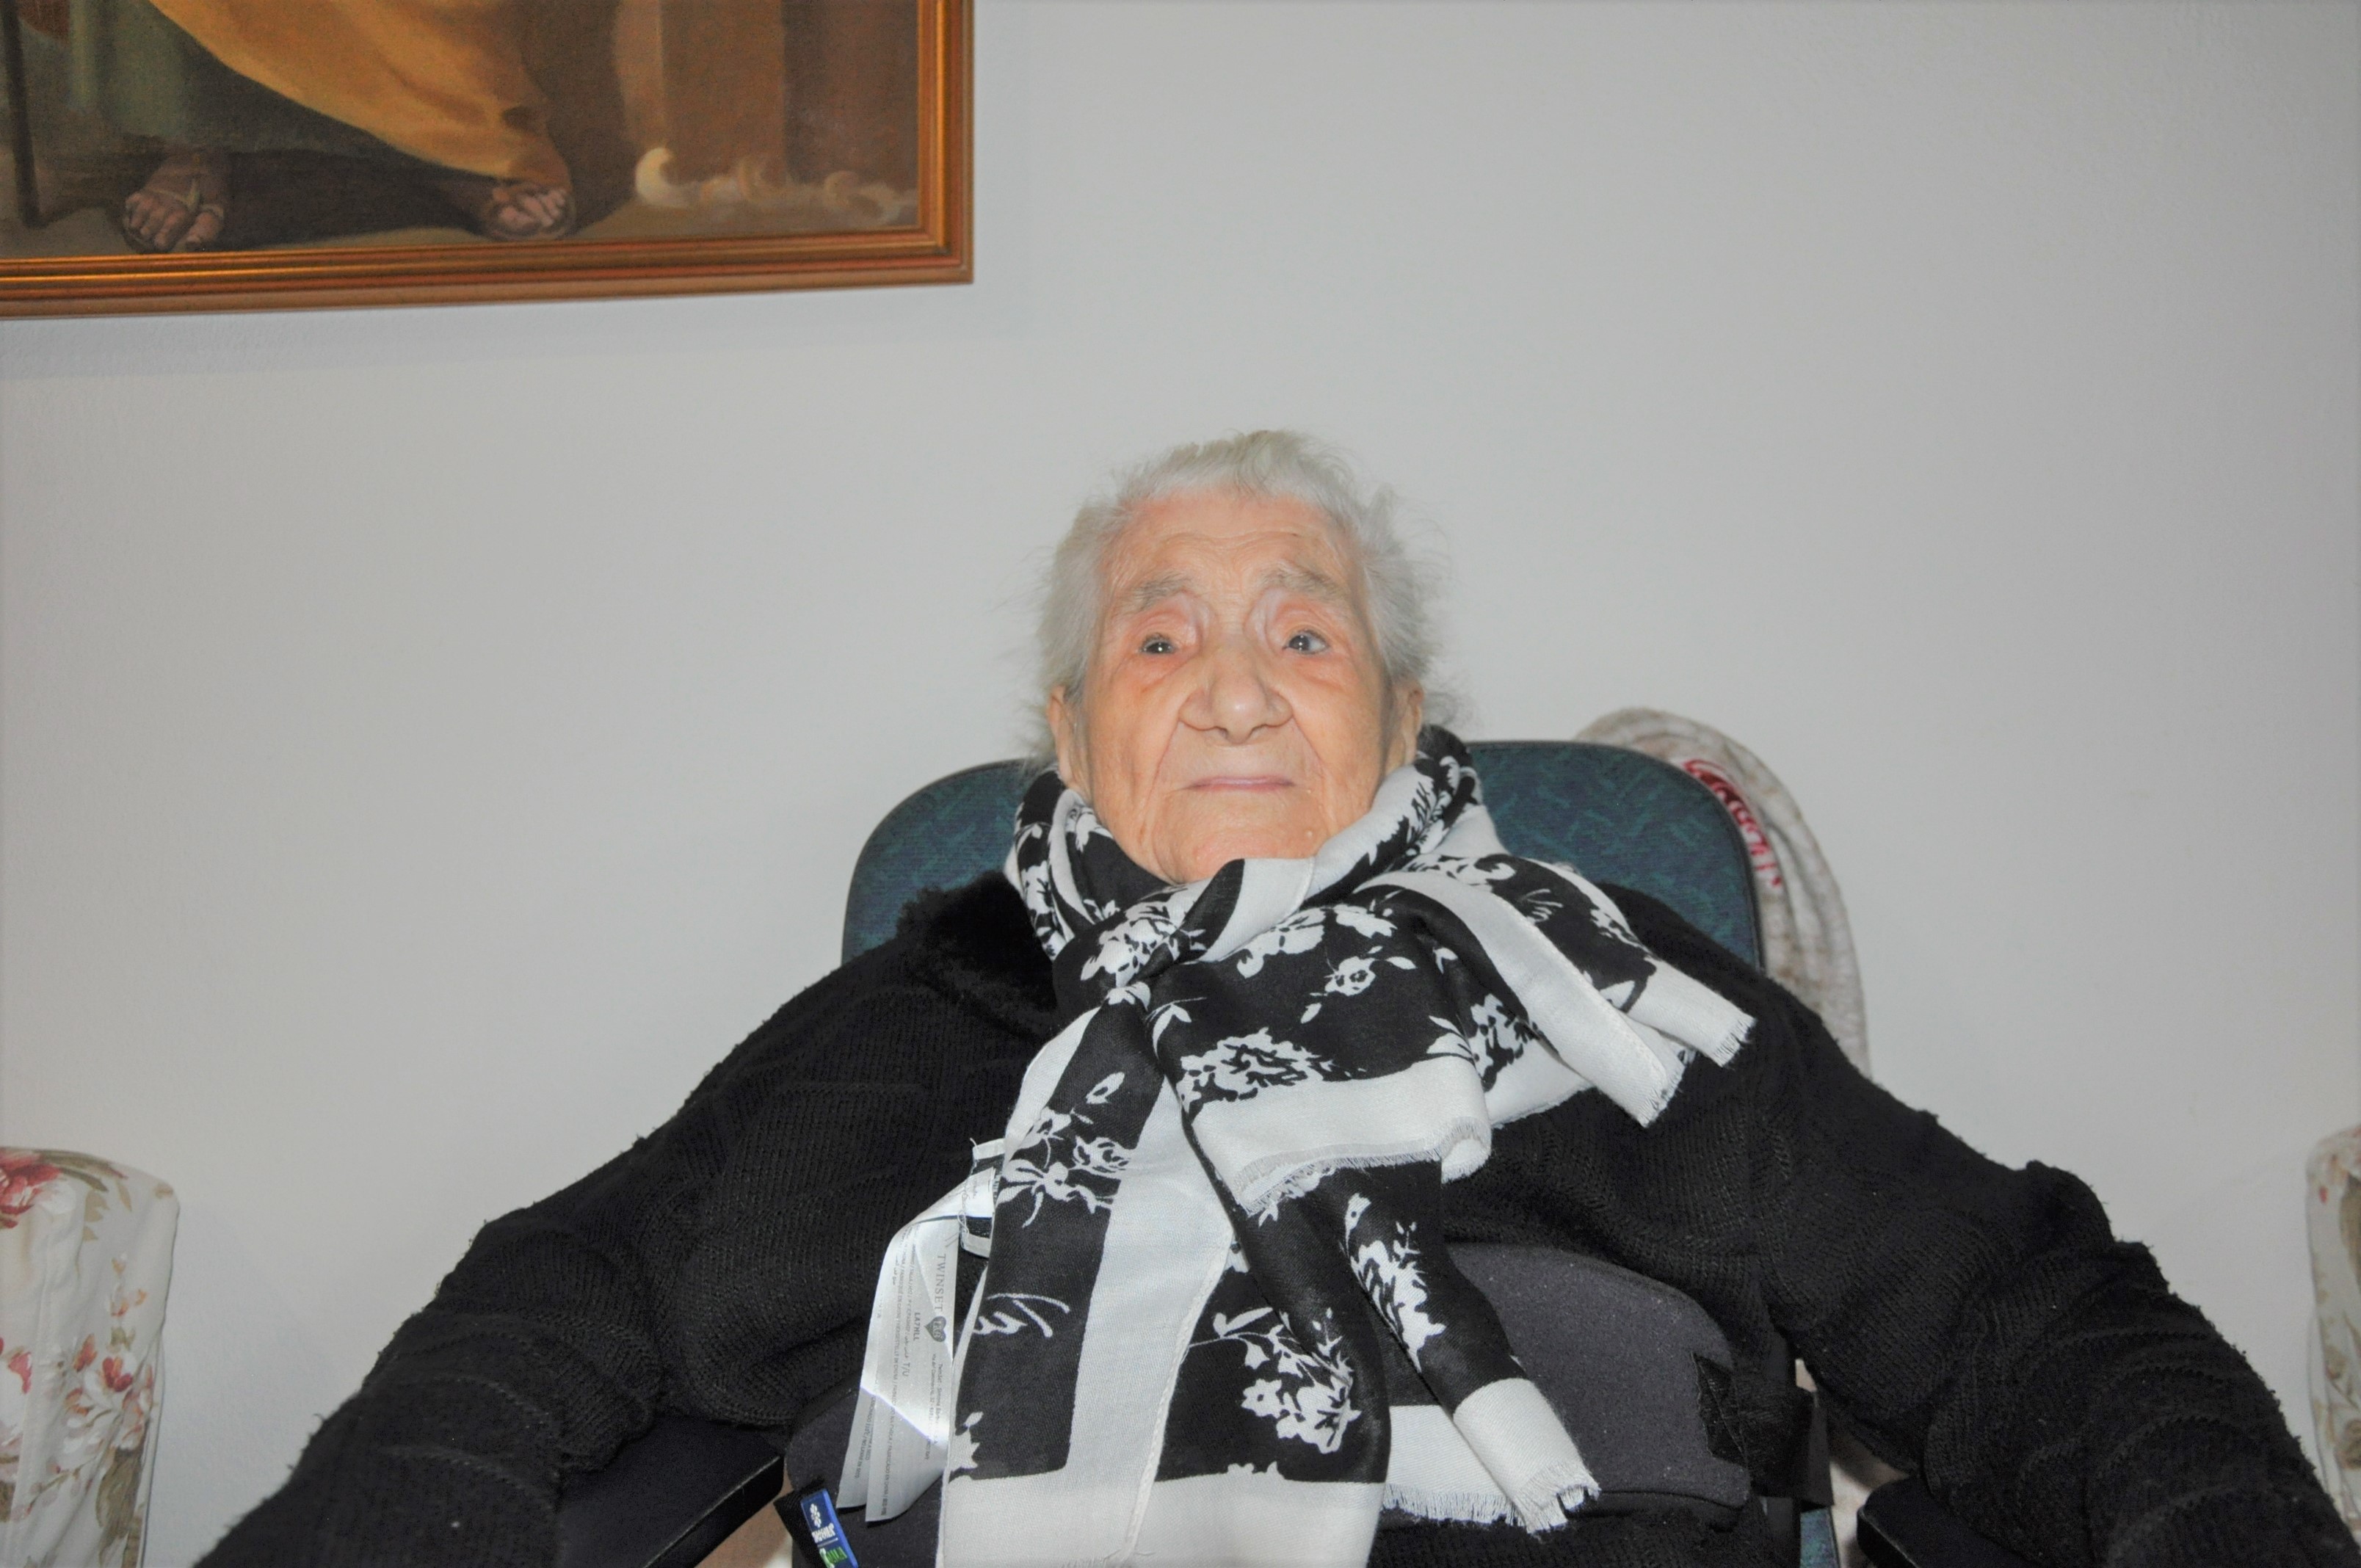 Ecco gli auguri di Natale di Miriedda Varrucciu centenaria di Olbia